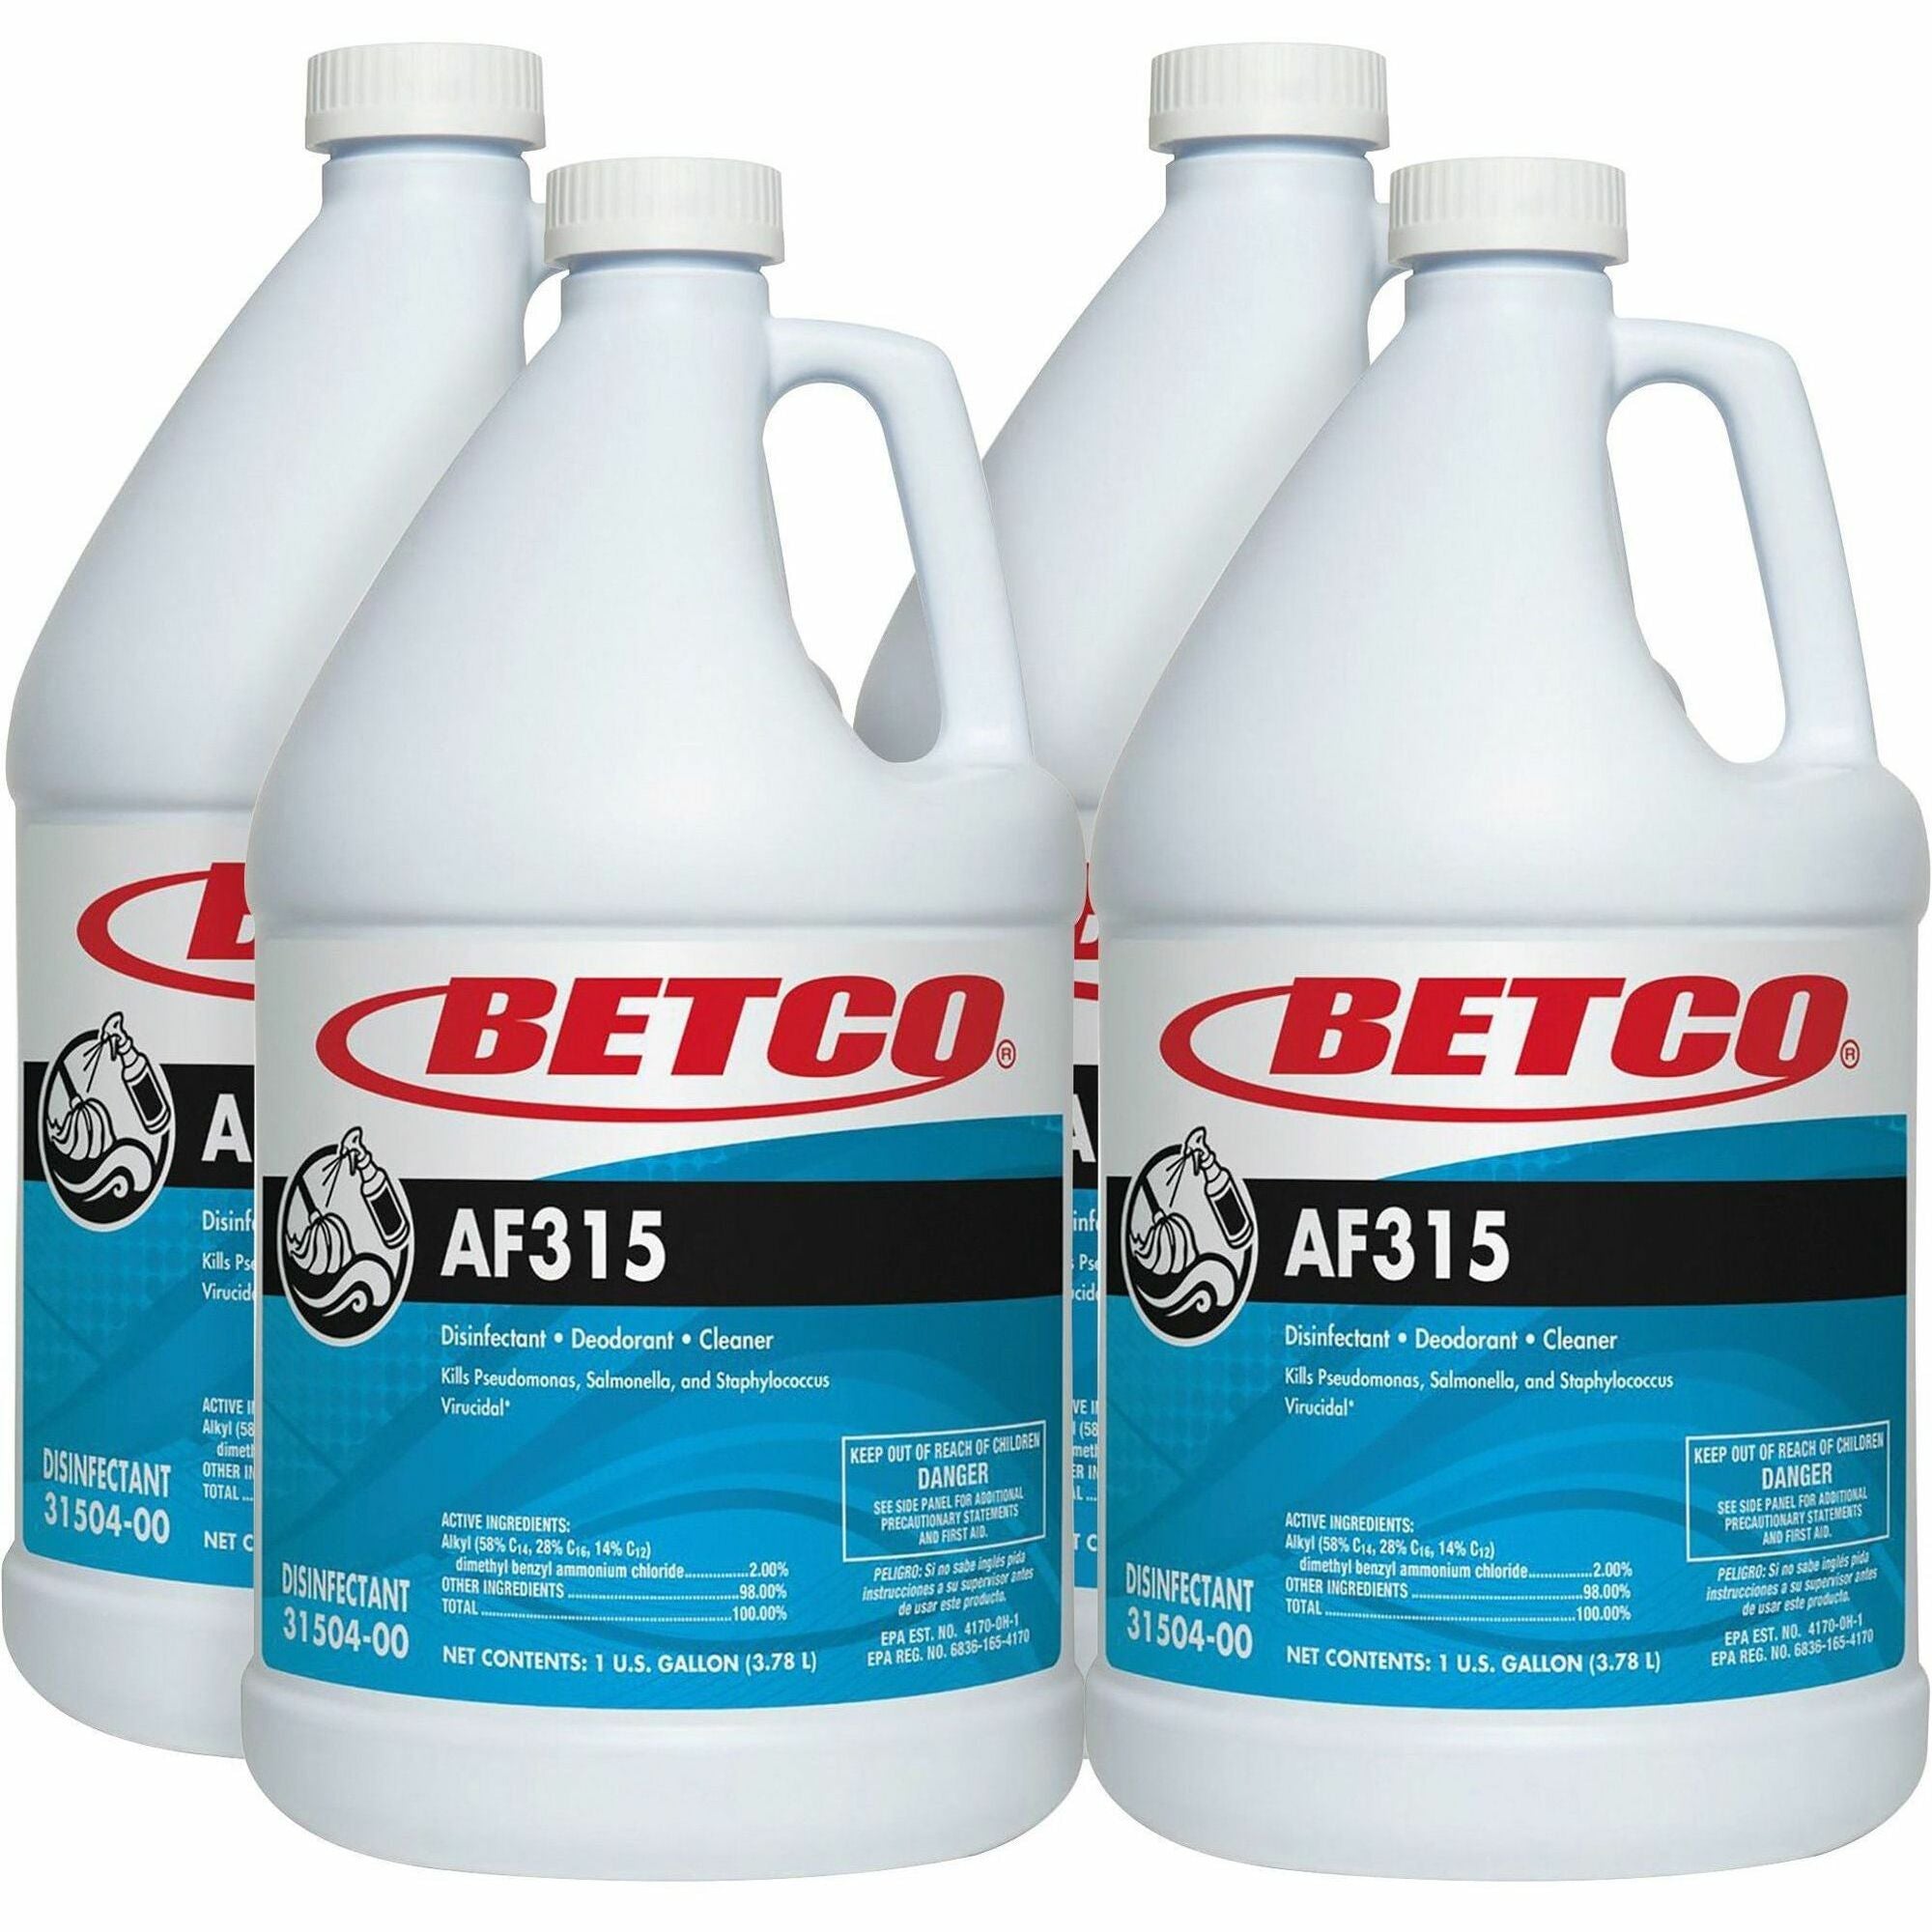 Betco AF315 Disinfectant Cleaner - Concentrate - 128 fl oz (4 quart) - Citrus & Cedar Scent - 4 / Carton - Deodorant, pH Neutral - Turquoise - 1